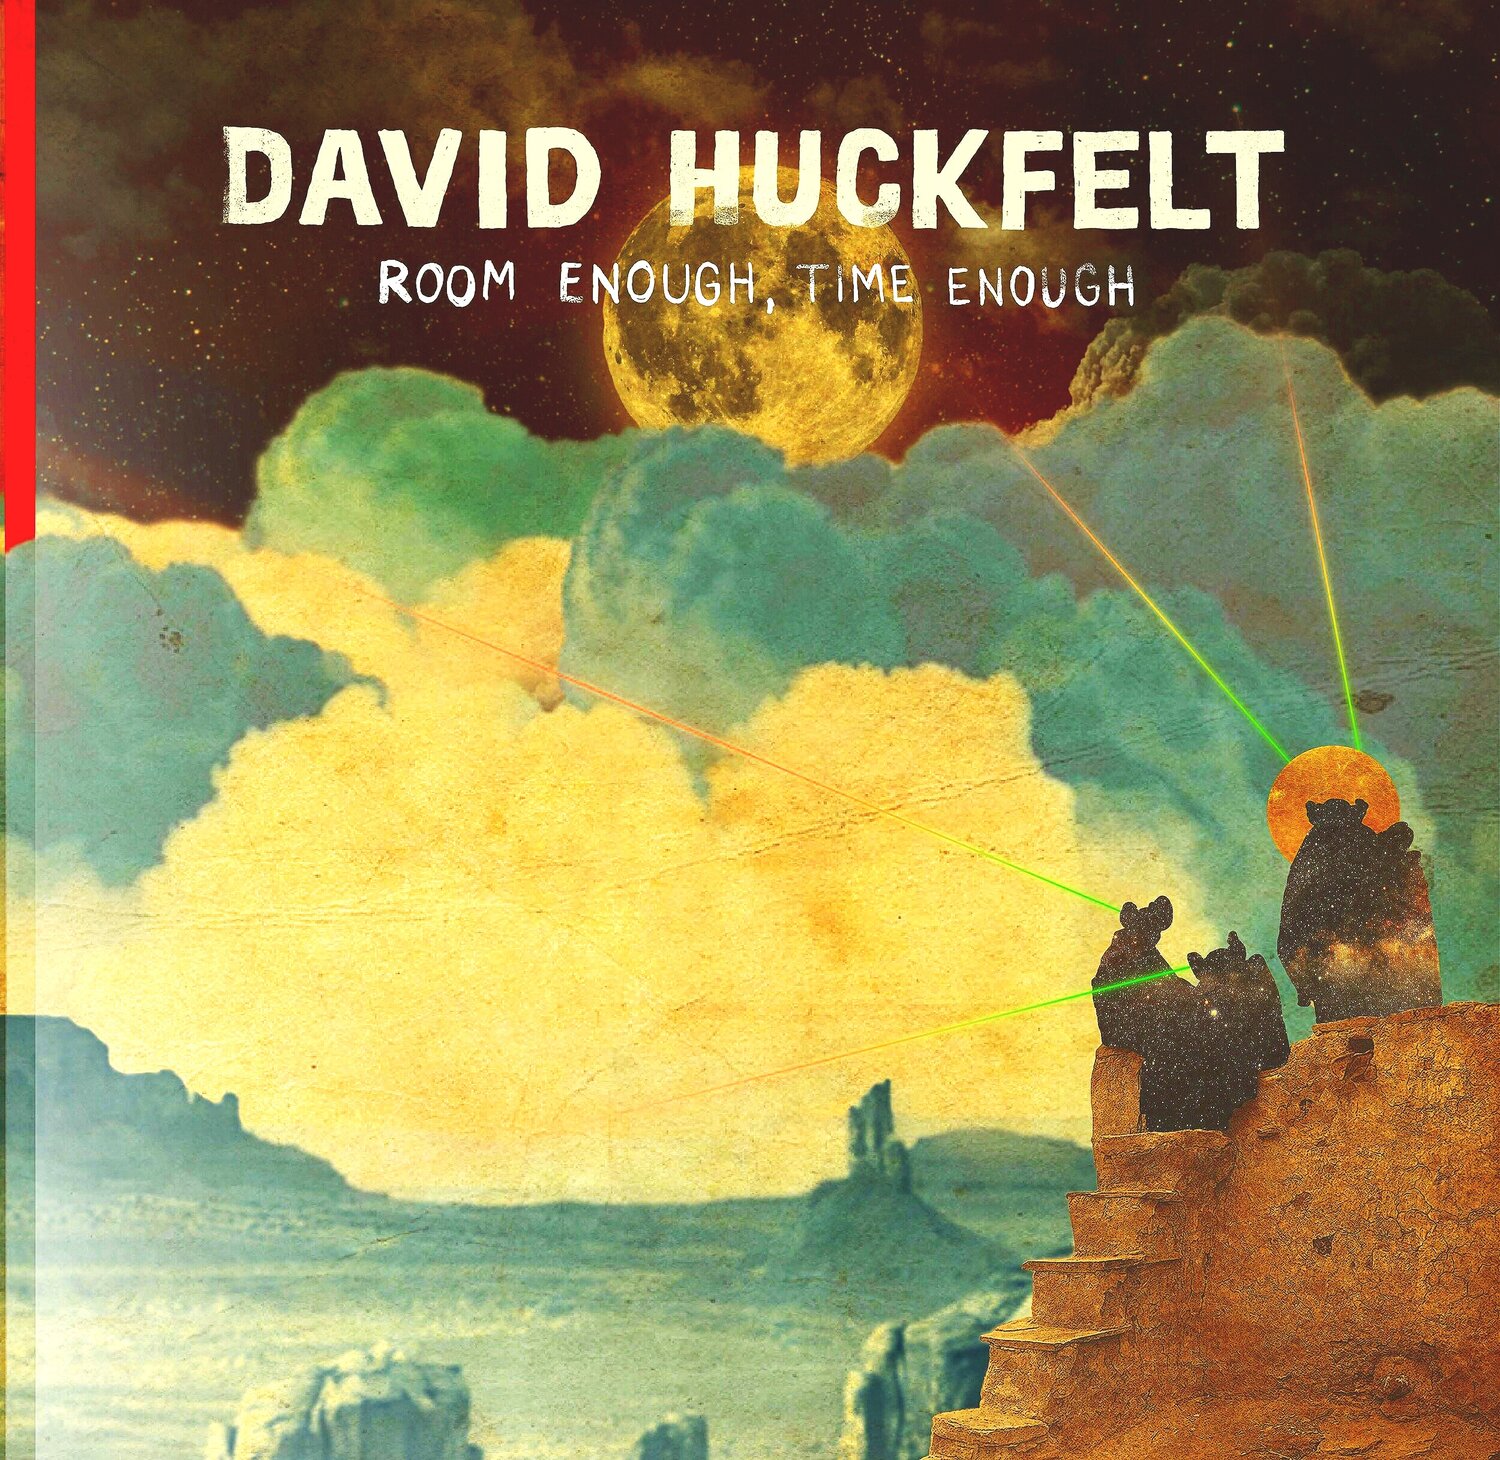 David Huckfelt